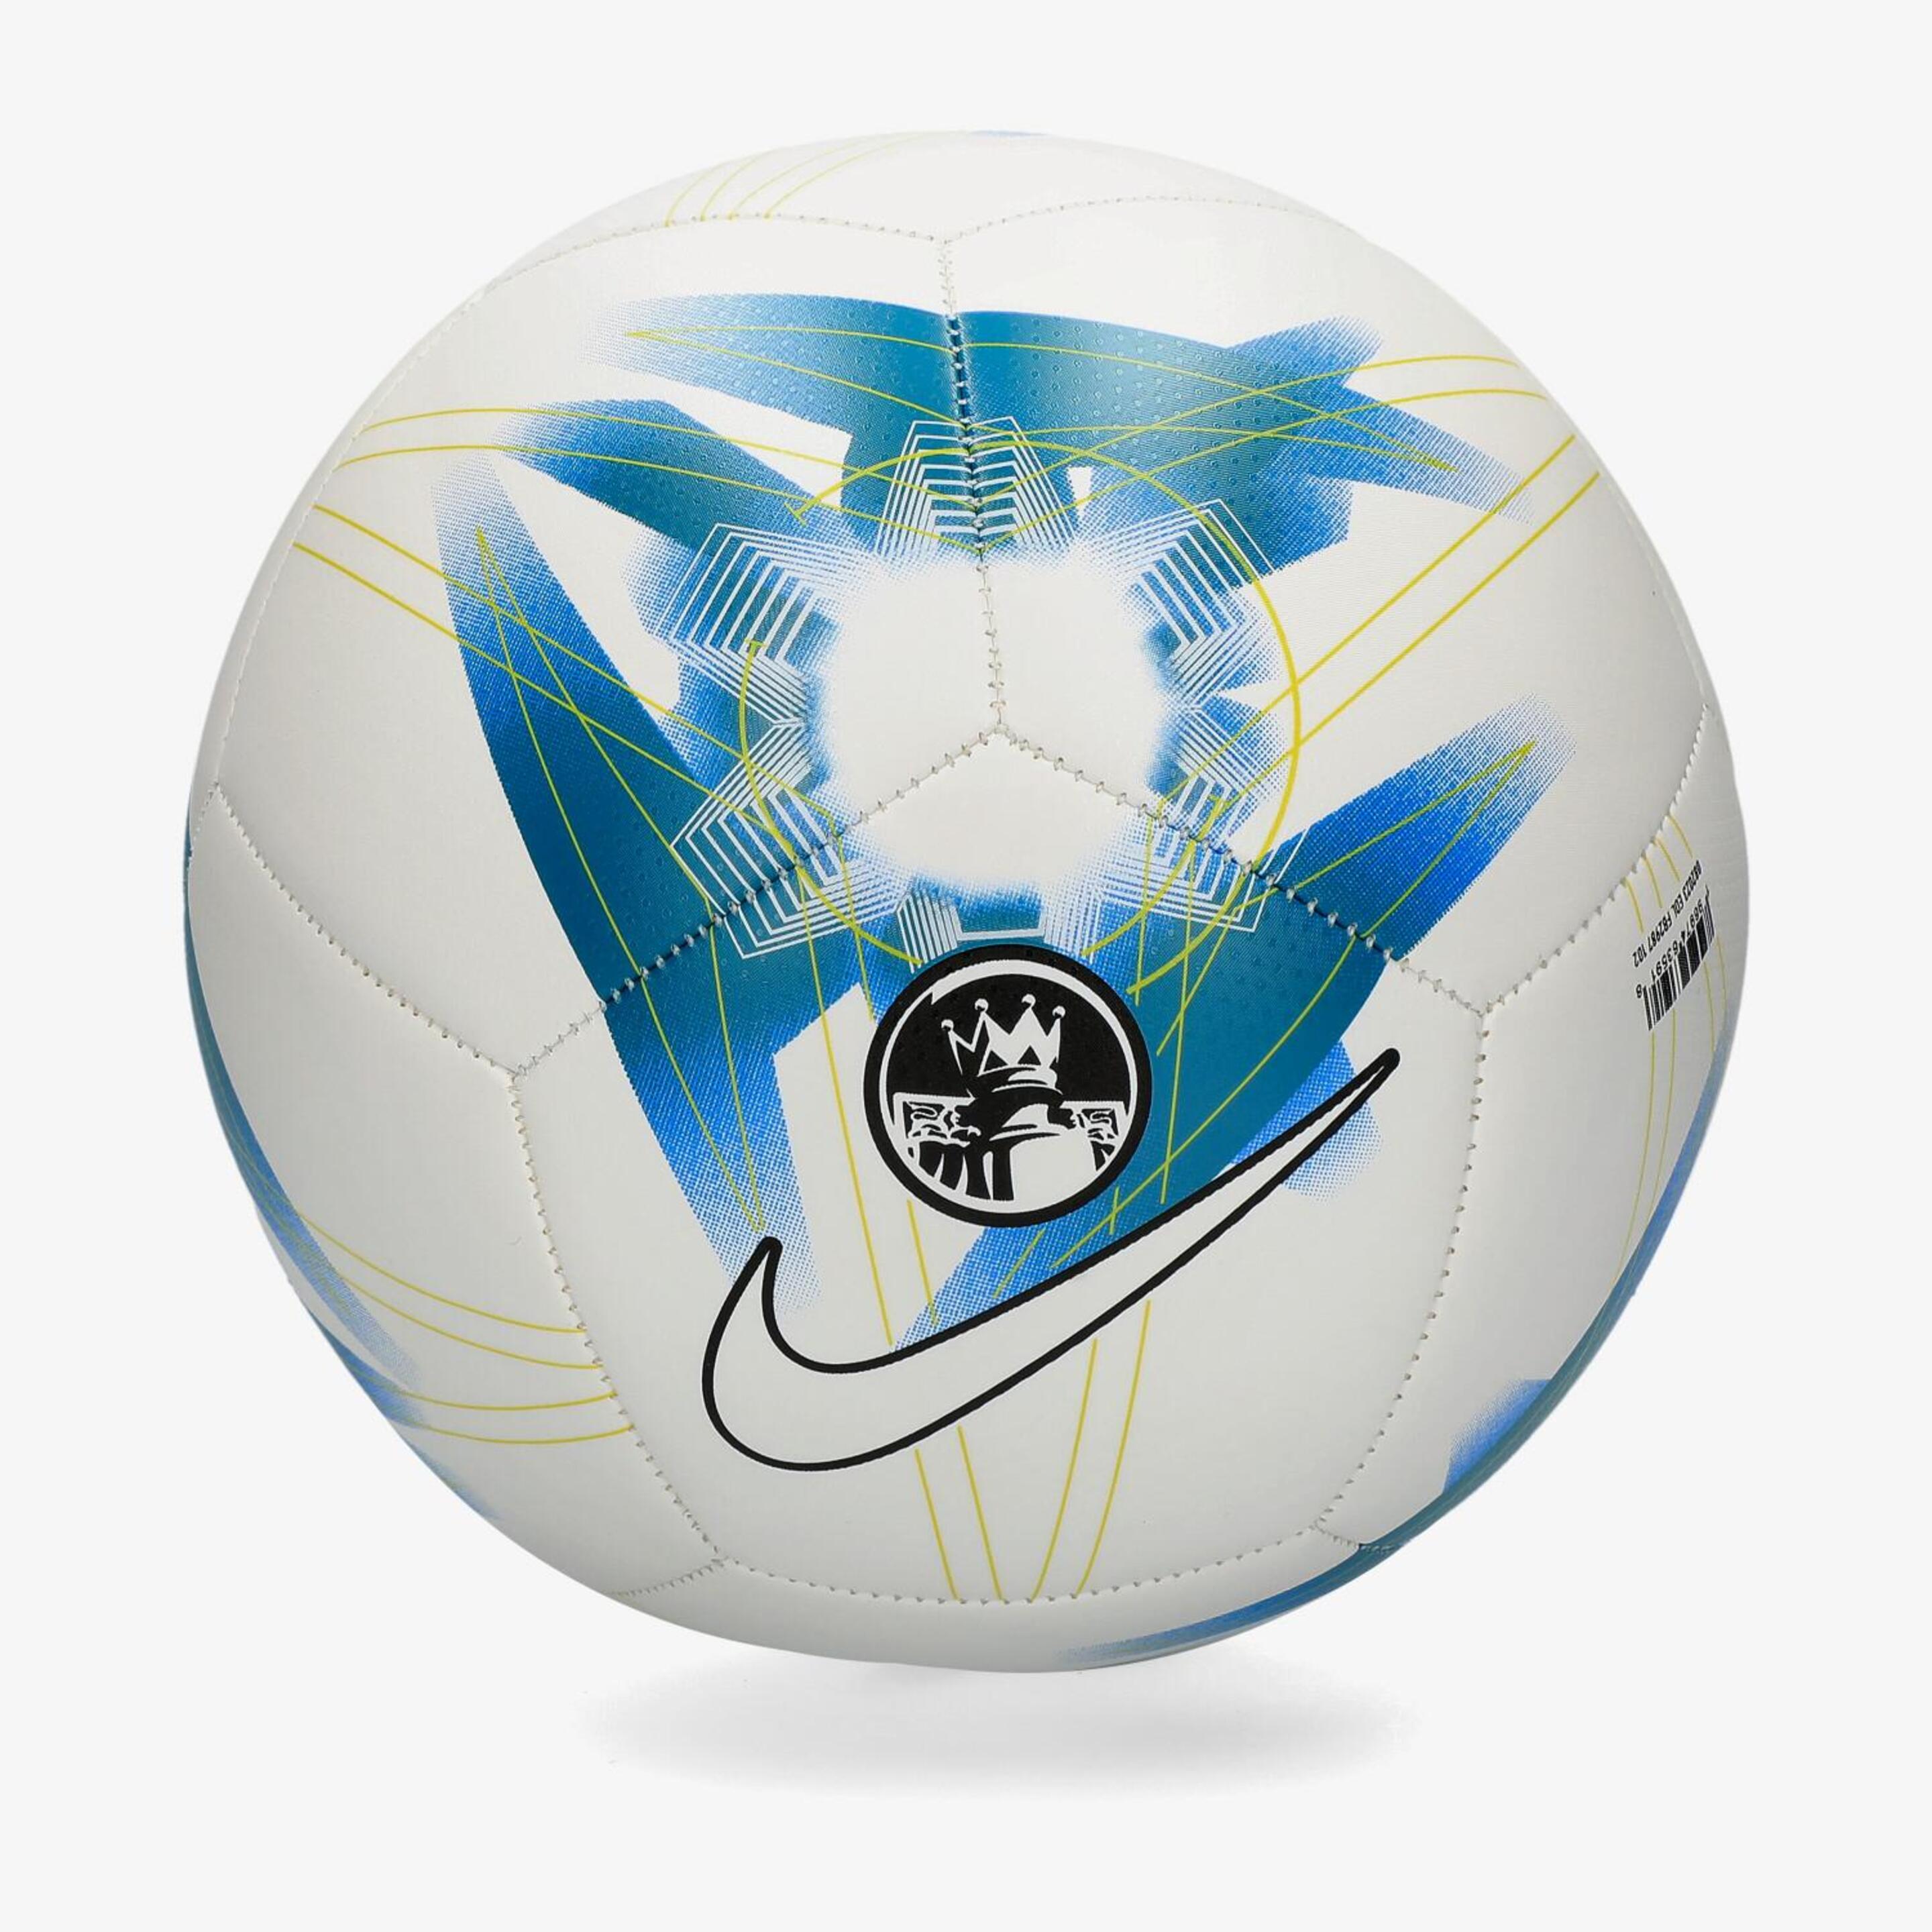 Balón Liga Inglesa Pitch 23/24 - Blanco - Balón Fútbol  | Sprinter